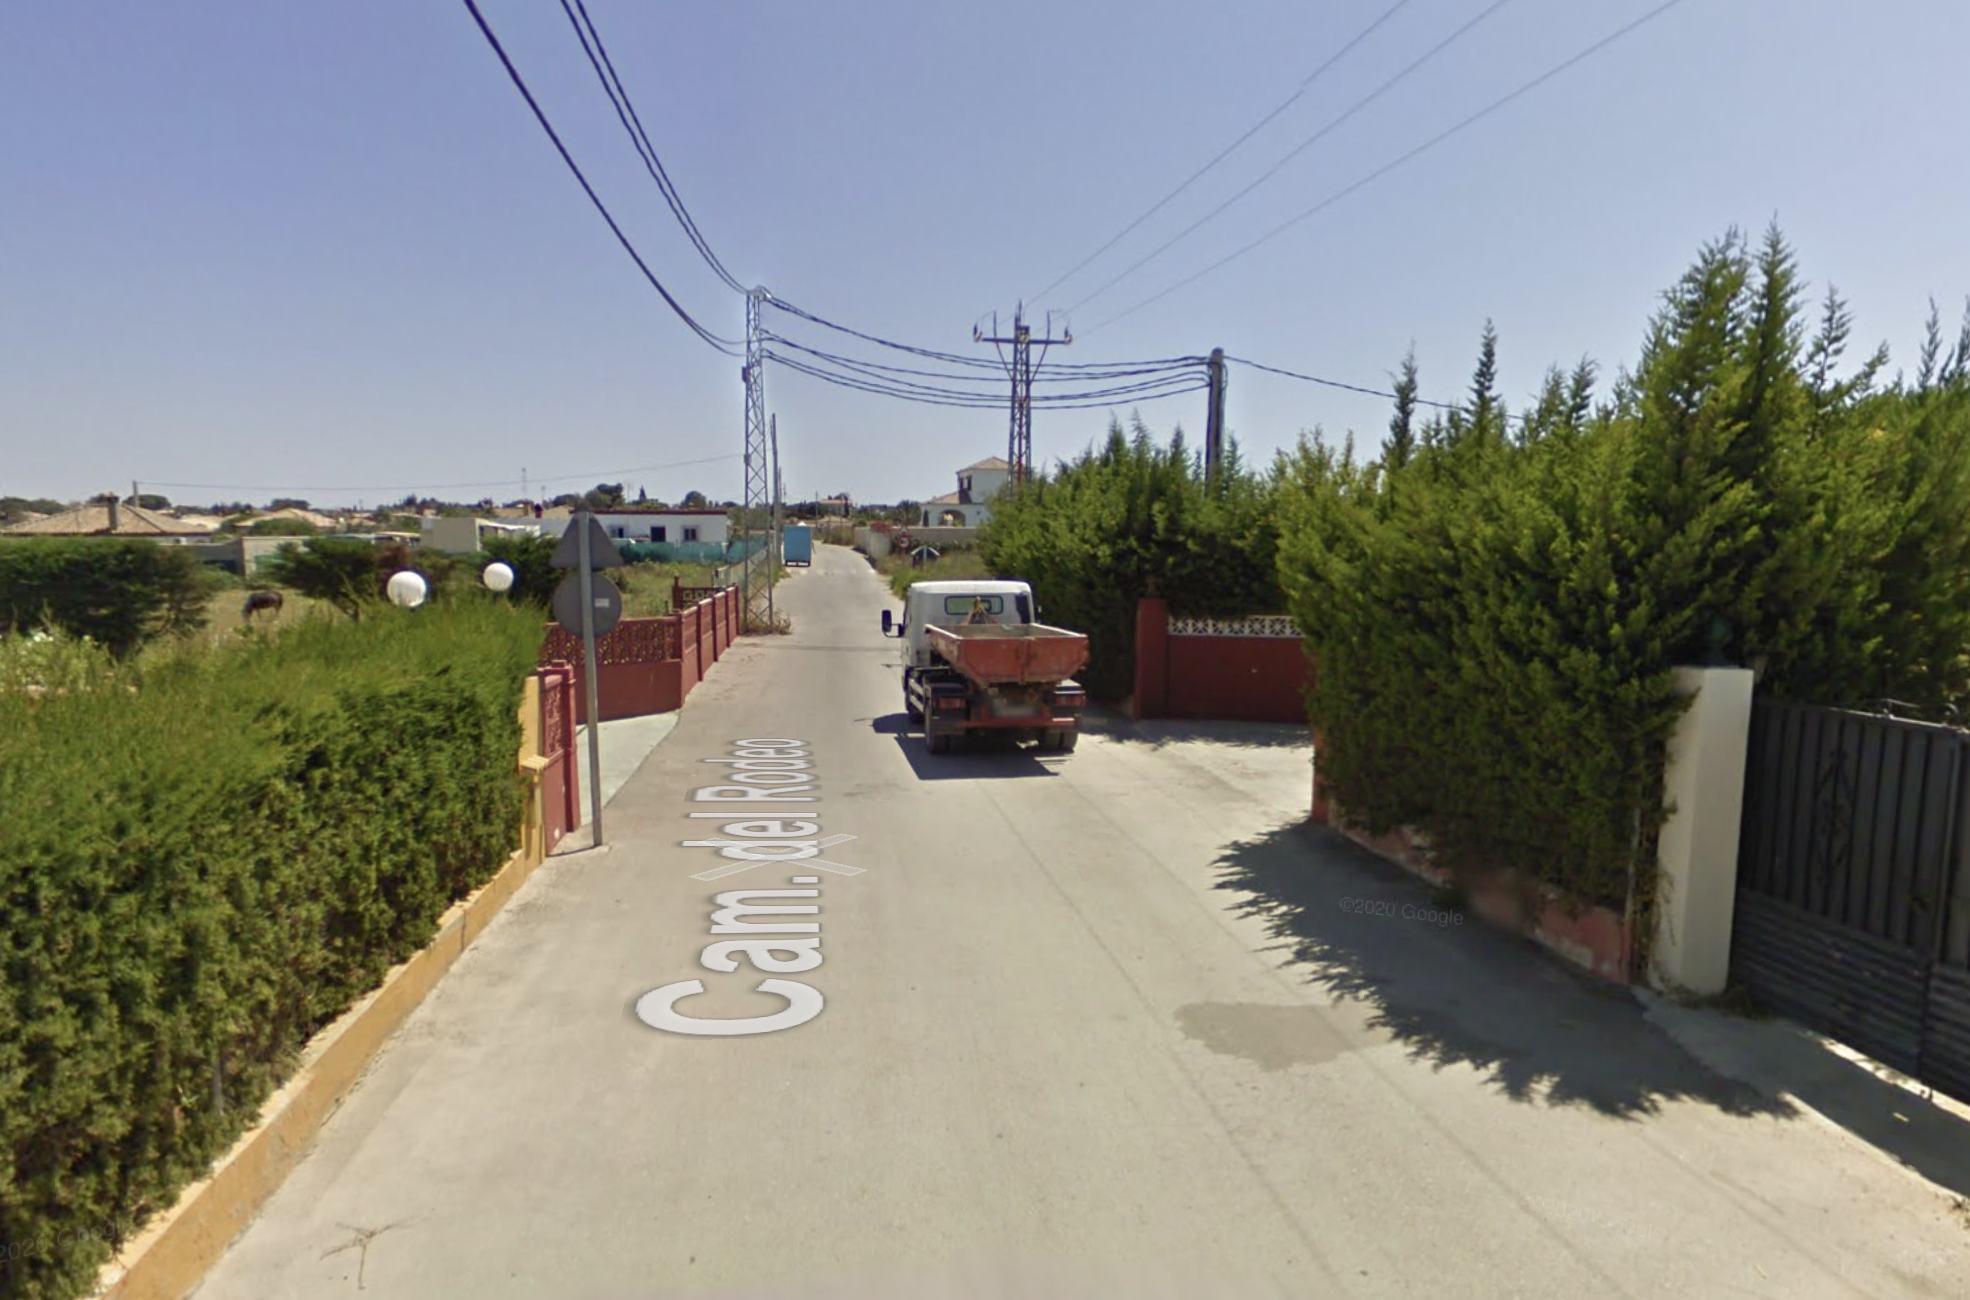 Dos detenidos por la posible muerte violenta de un joven en Chiclana. En la imagen de Google Maps, zona del Pago de Humo donde se produjeron los hechos.